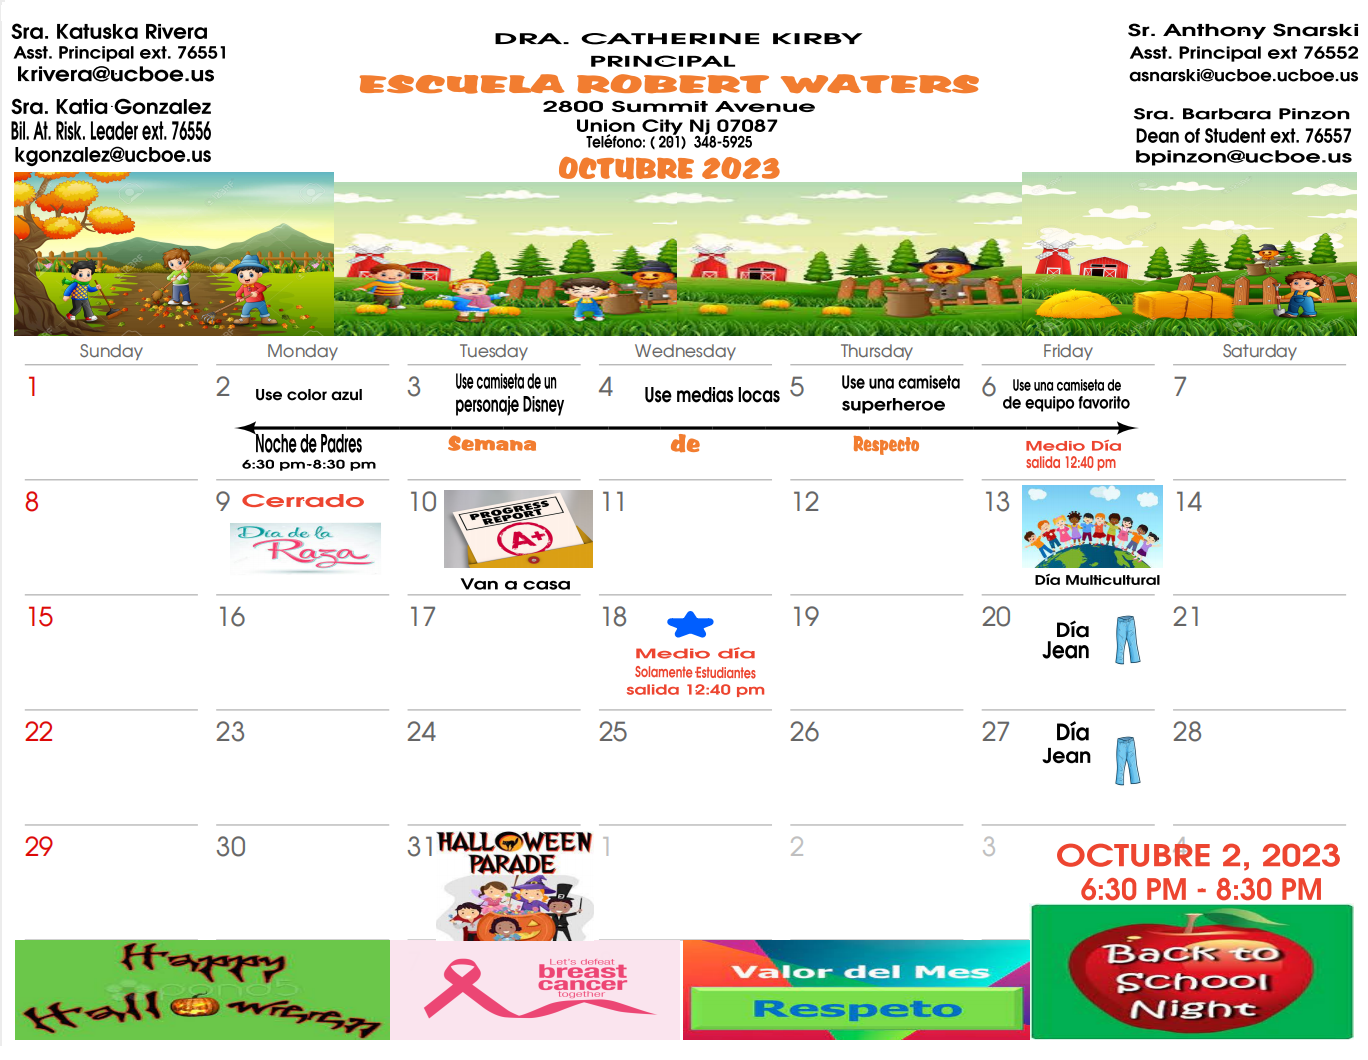 Robert Waters School-October 2023 Calendar-Spanish